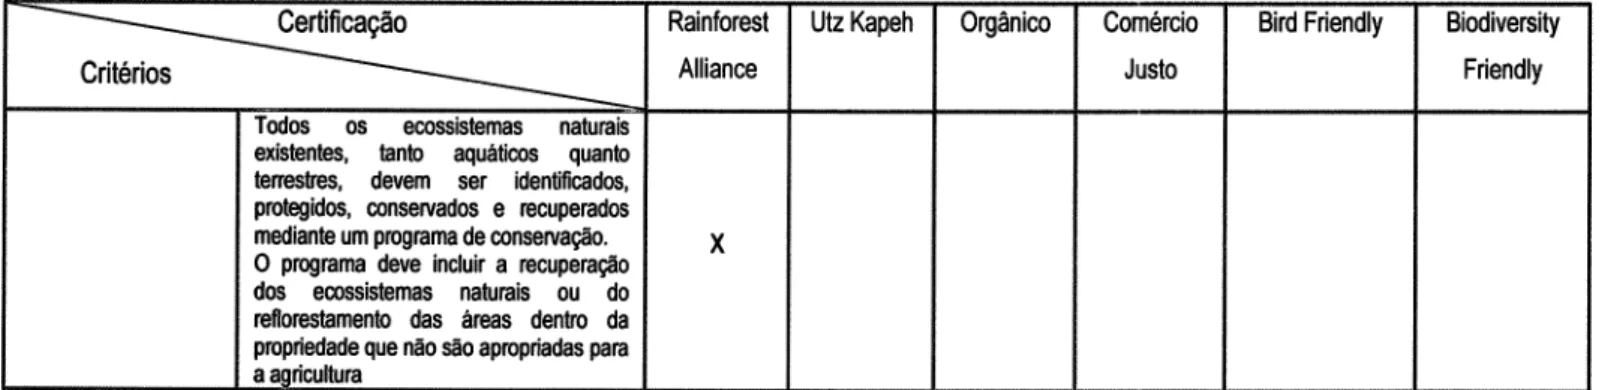 Tabela  2-  Matíz  de  anrálise  comparativa  dos critérios  ambientais  dos  Sistemas  de Certificação